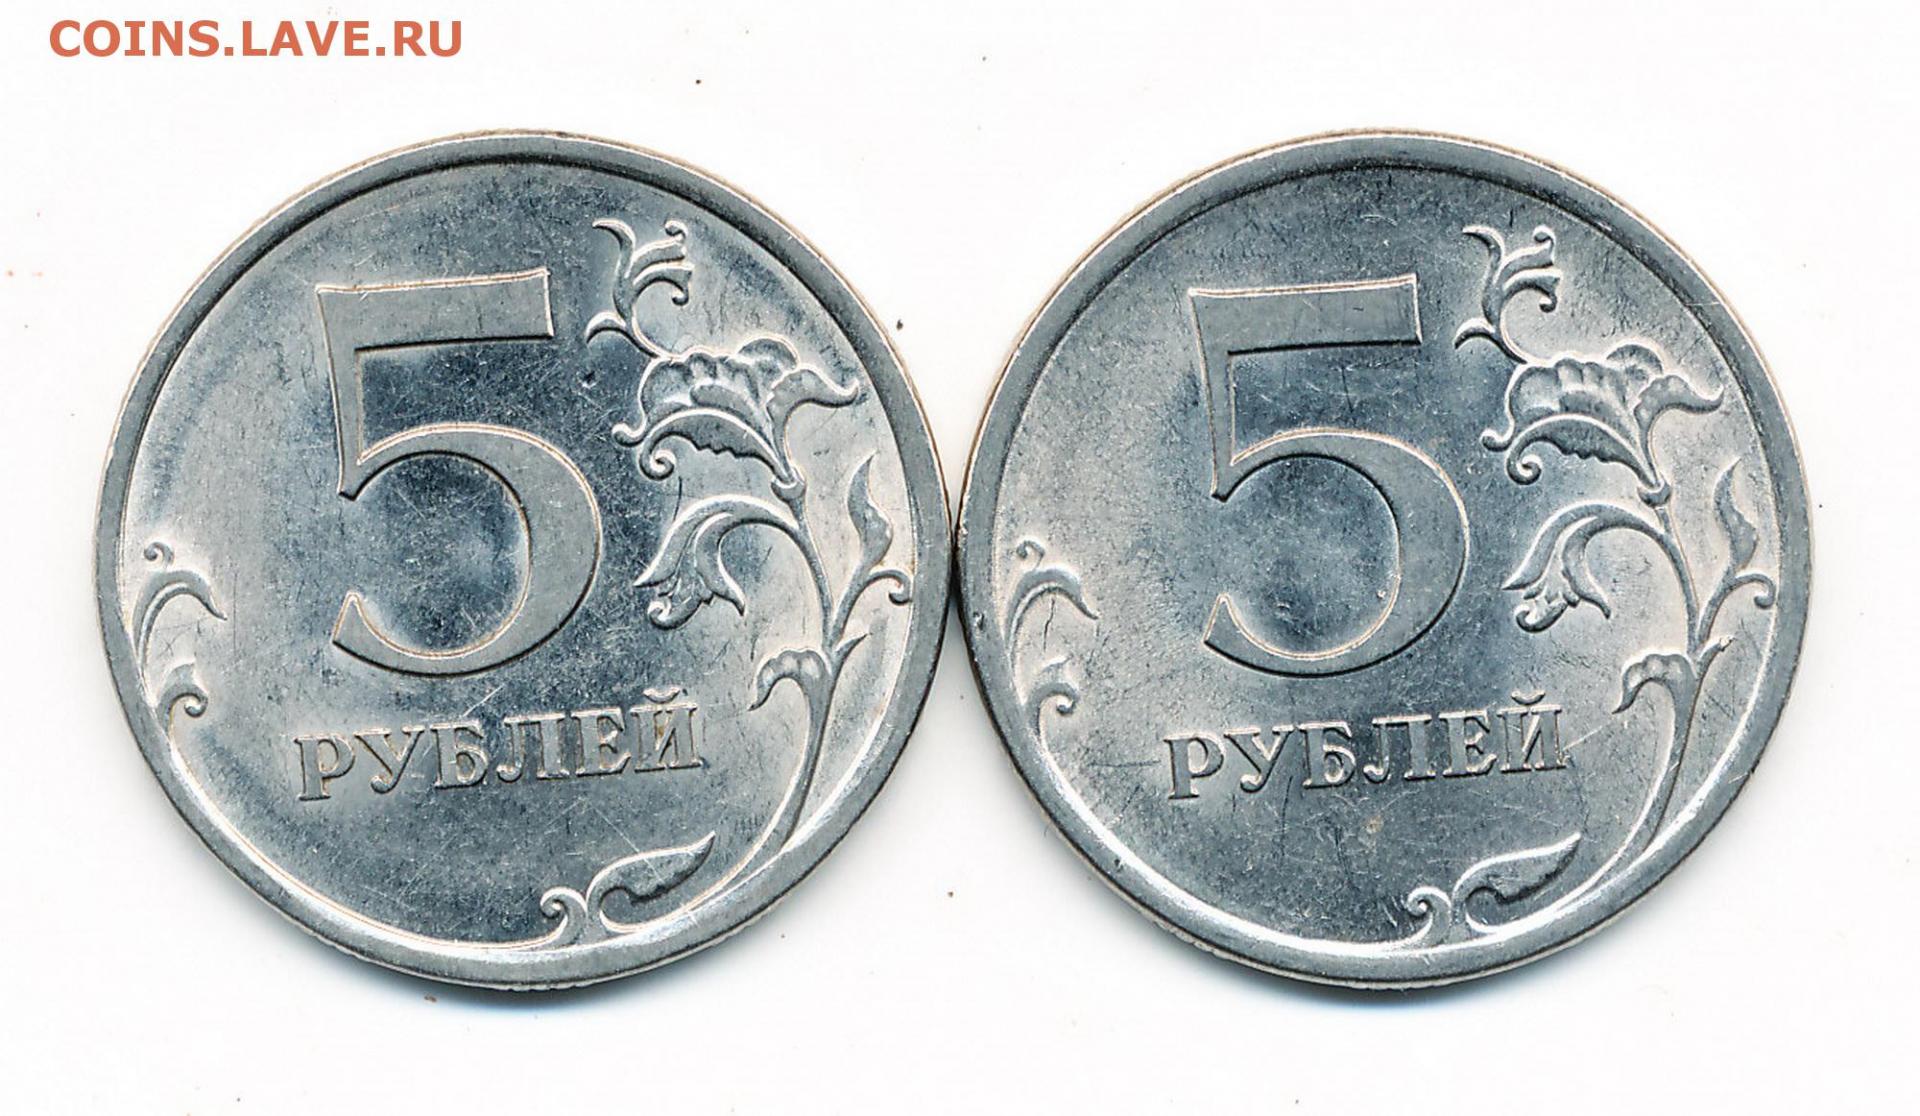 Аукцион 5 рублей. 5 Рублей 2009 СПМД. 5 Рублей 2009 СПМД Аверс г. 5 Рублей 2009 в другом металле. Фото 5 рублей 2009.